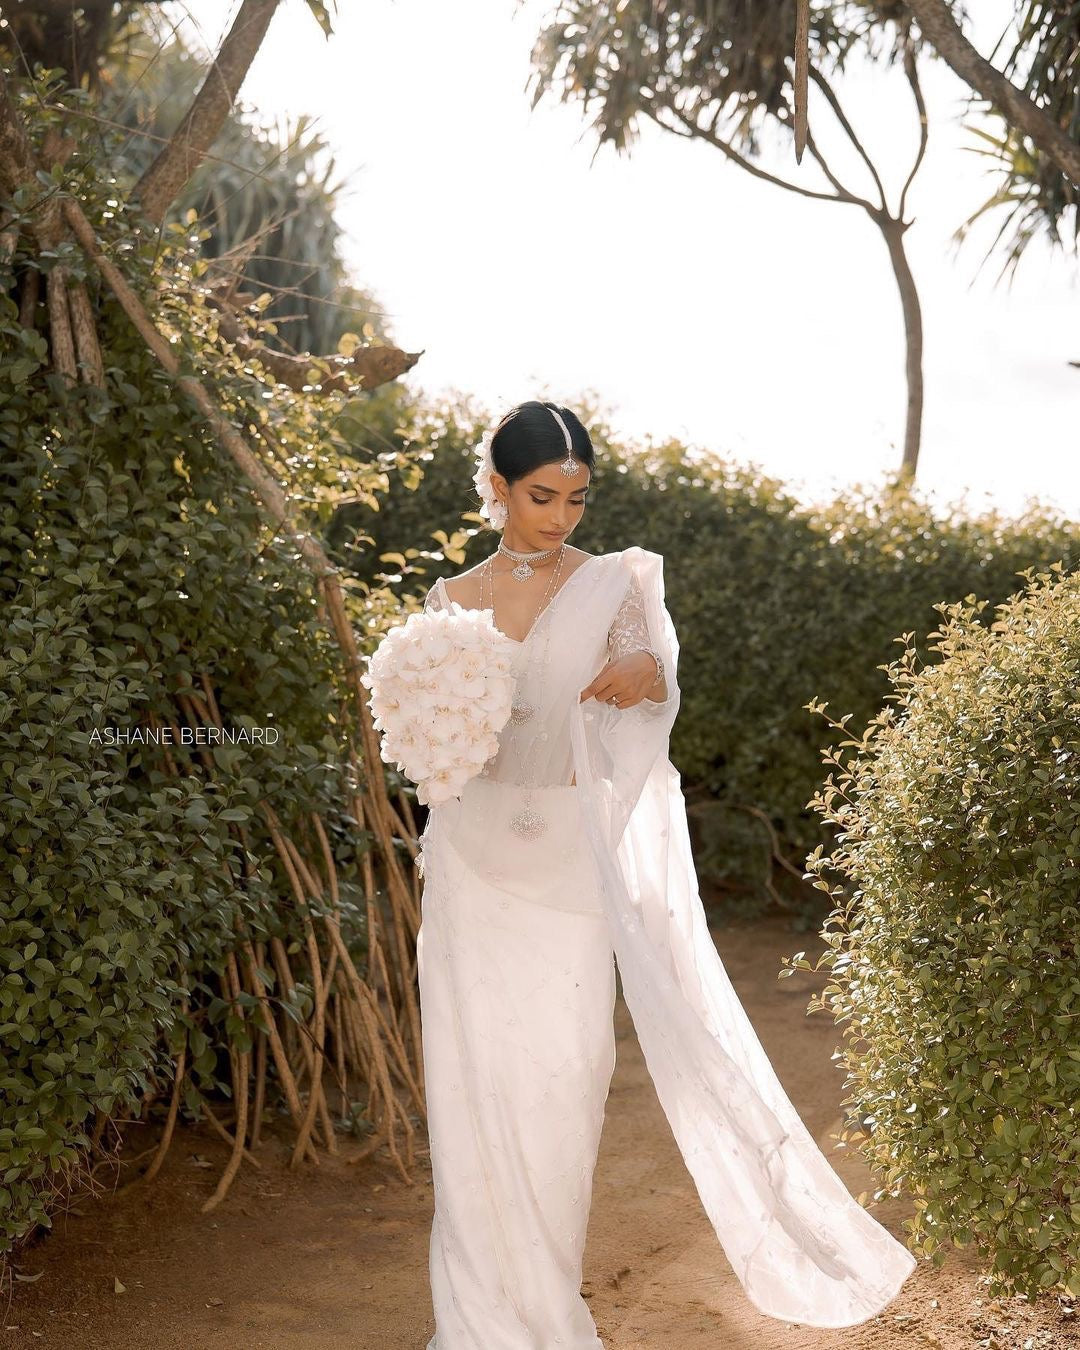 Wedding Sarees - Buy Bridal Sarees For Women At Best Price – Koskii